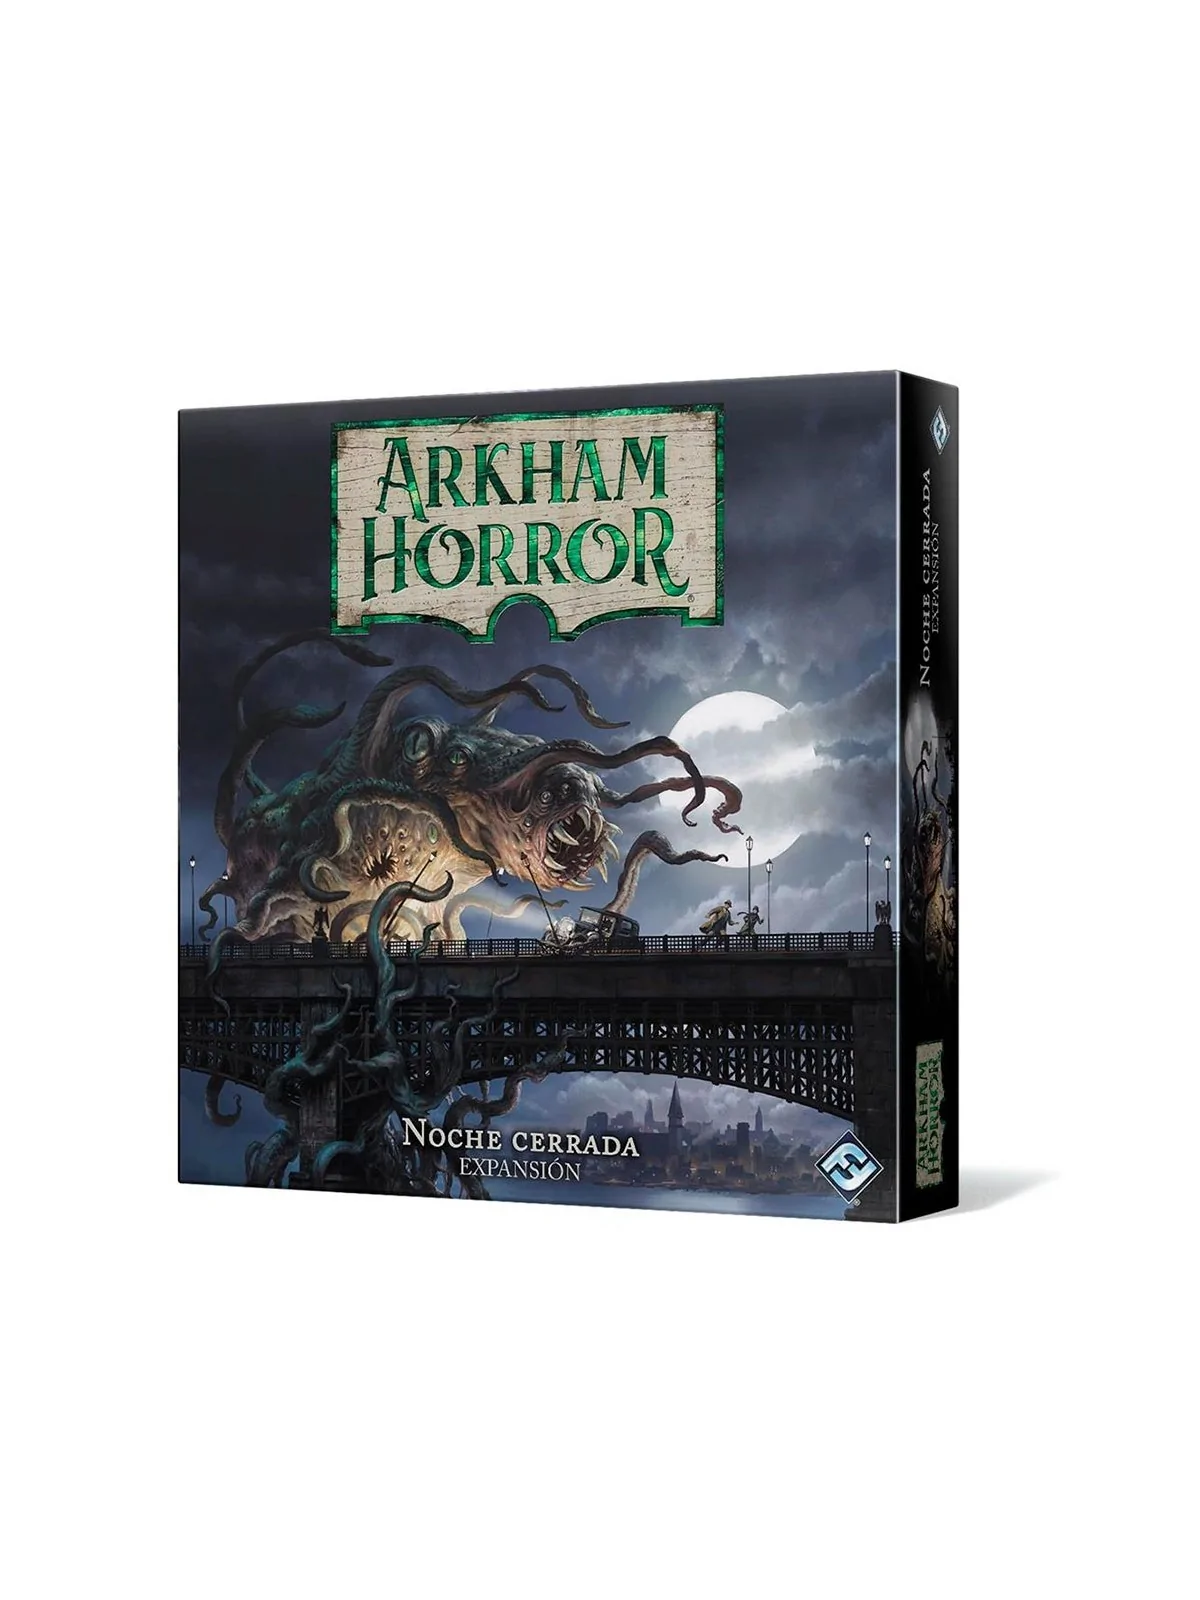 Comprar Arkham Horror: Noche Cerrada barato al mejor precio 29,65 € de